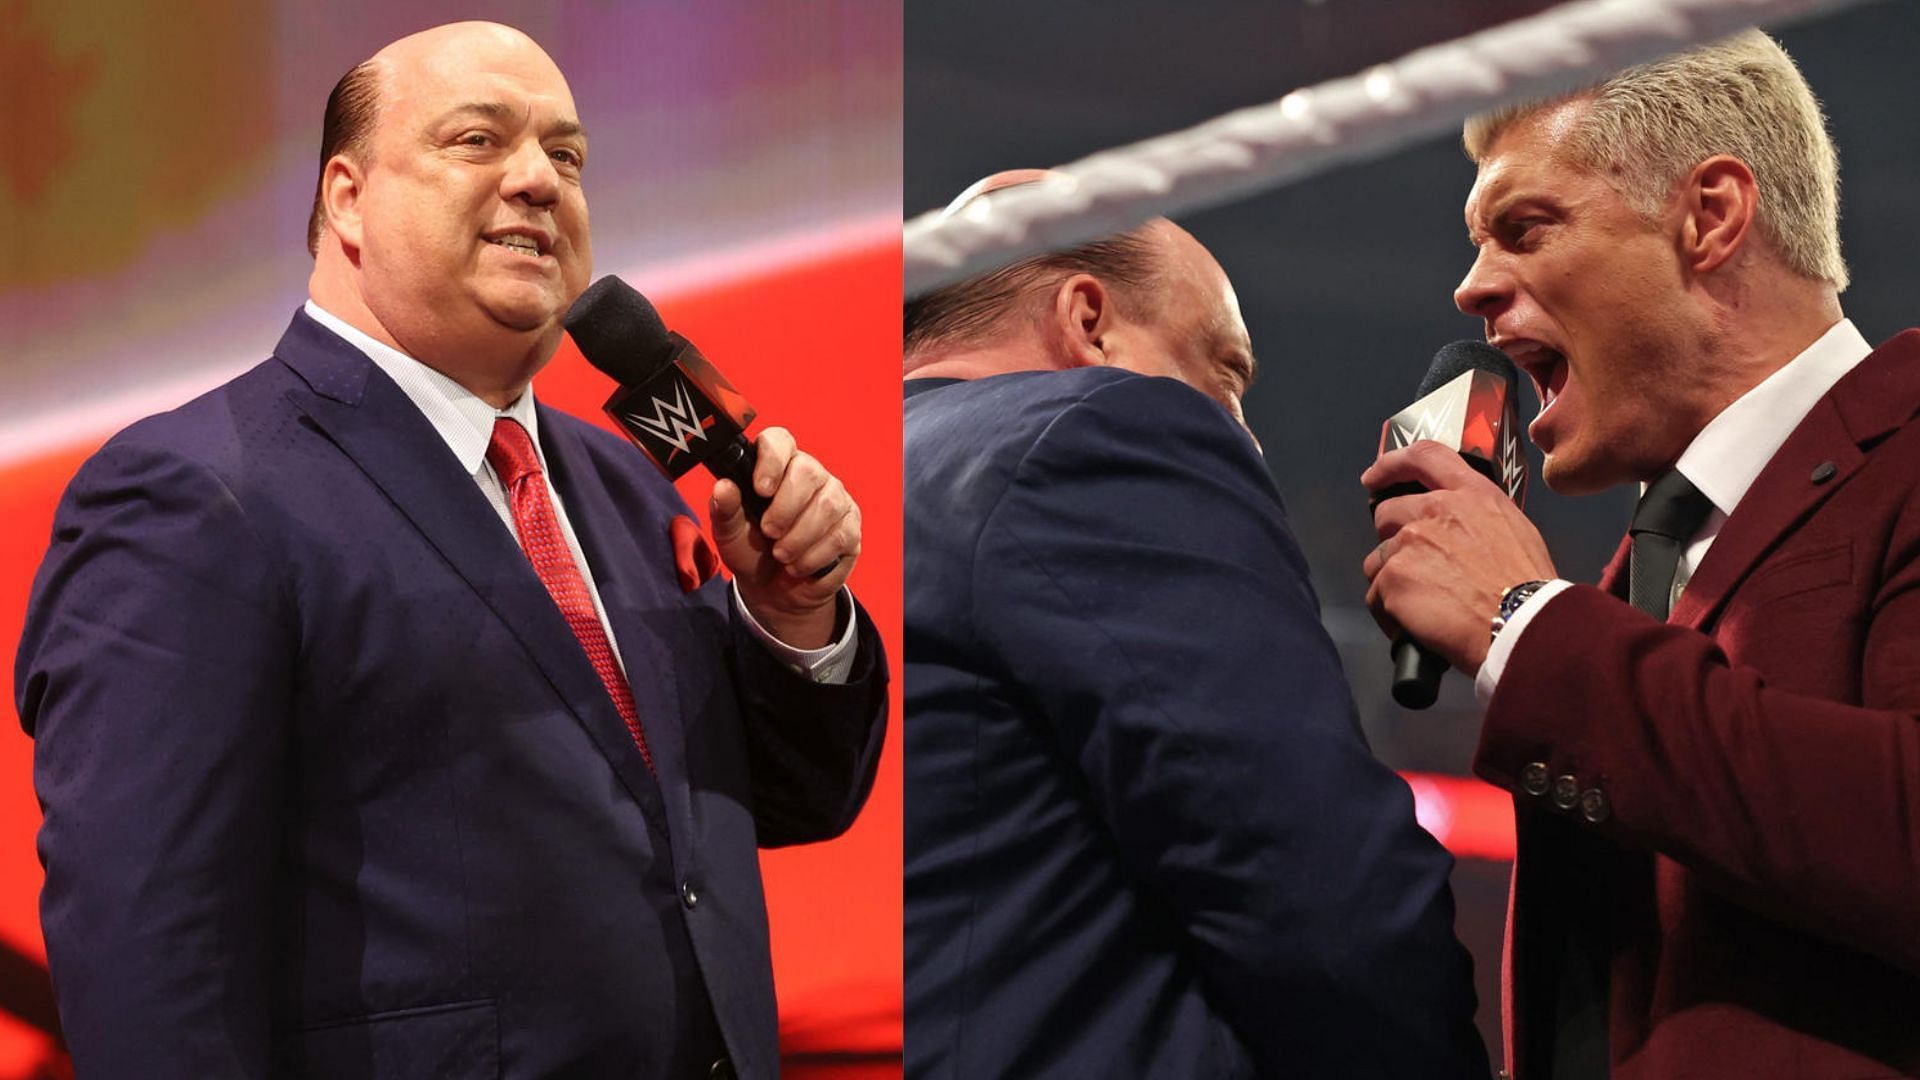 Cody Rhodes and Paul Heyman had a great promo on WWE RAW.